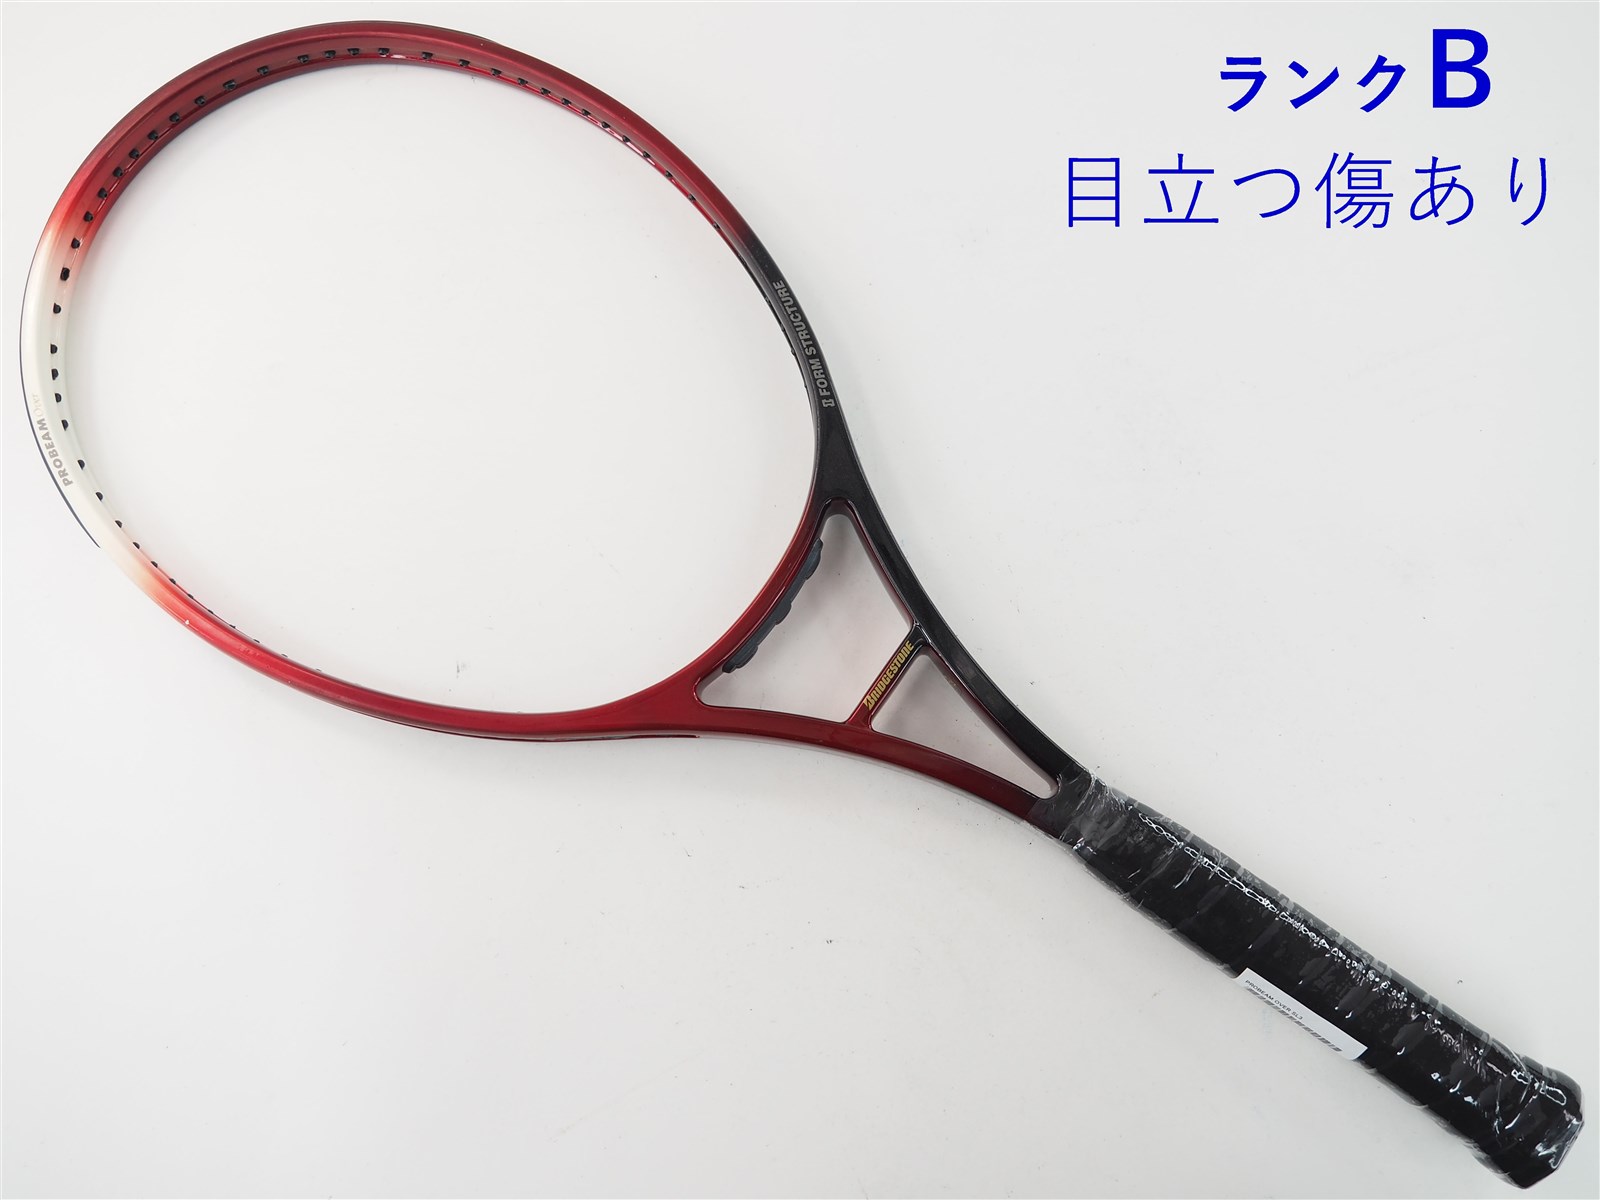 テニスラケット ブリヂストン プロビーム V-WI 3.0 2004年モデル (G2)BRIDGESTONE PROBEAM V-WI 3.0 2004